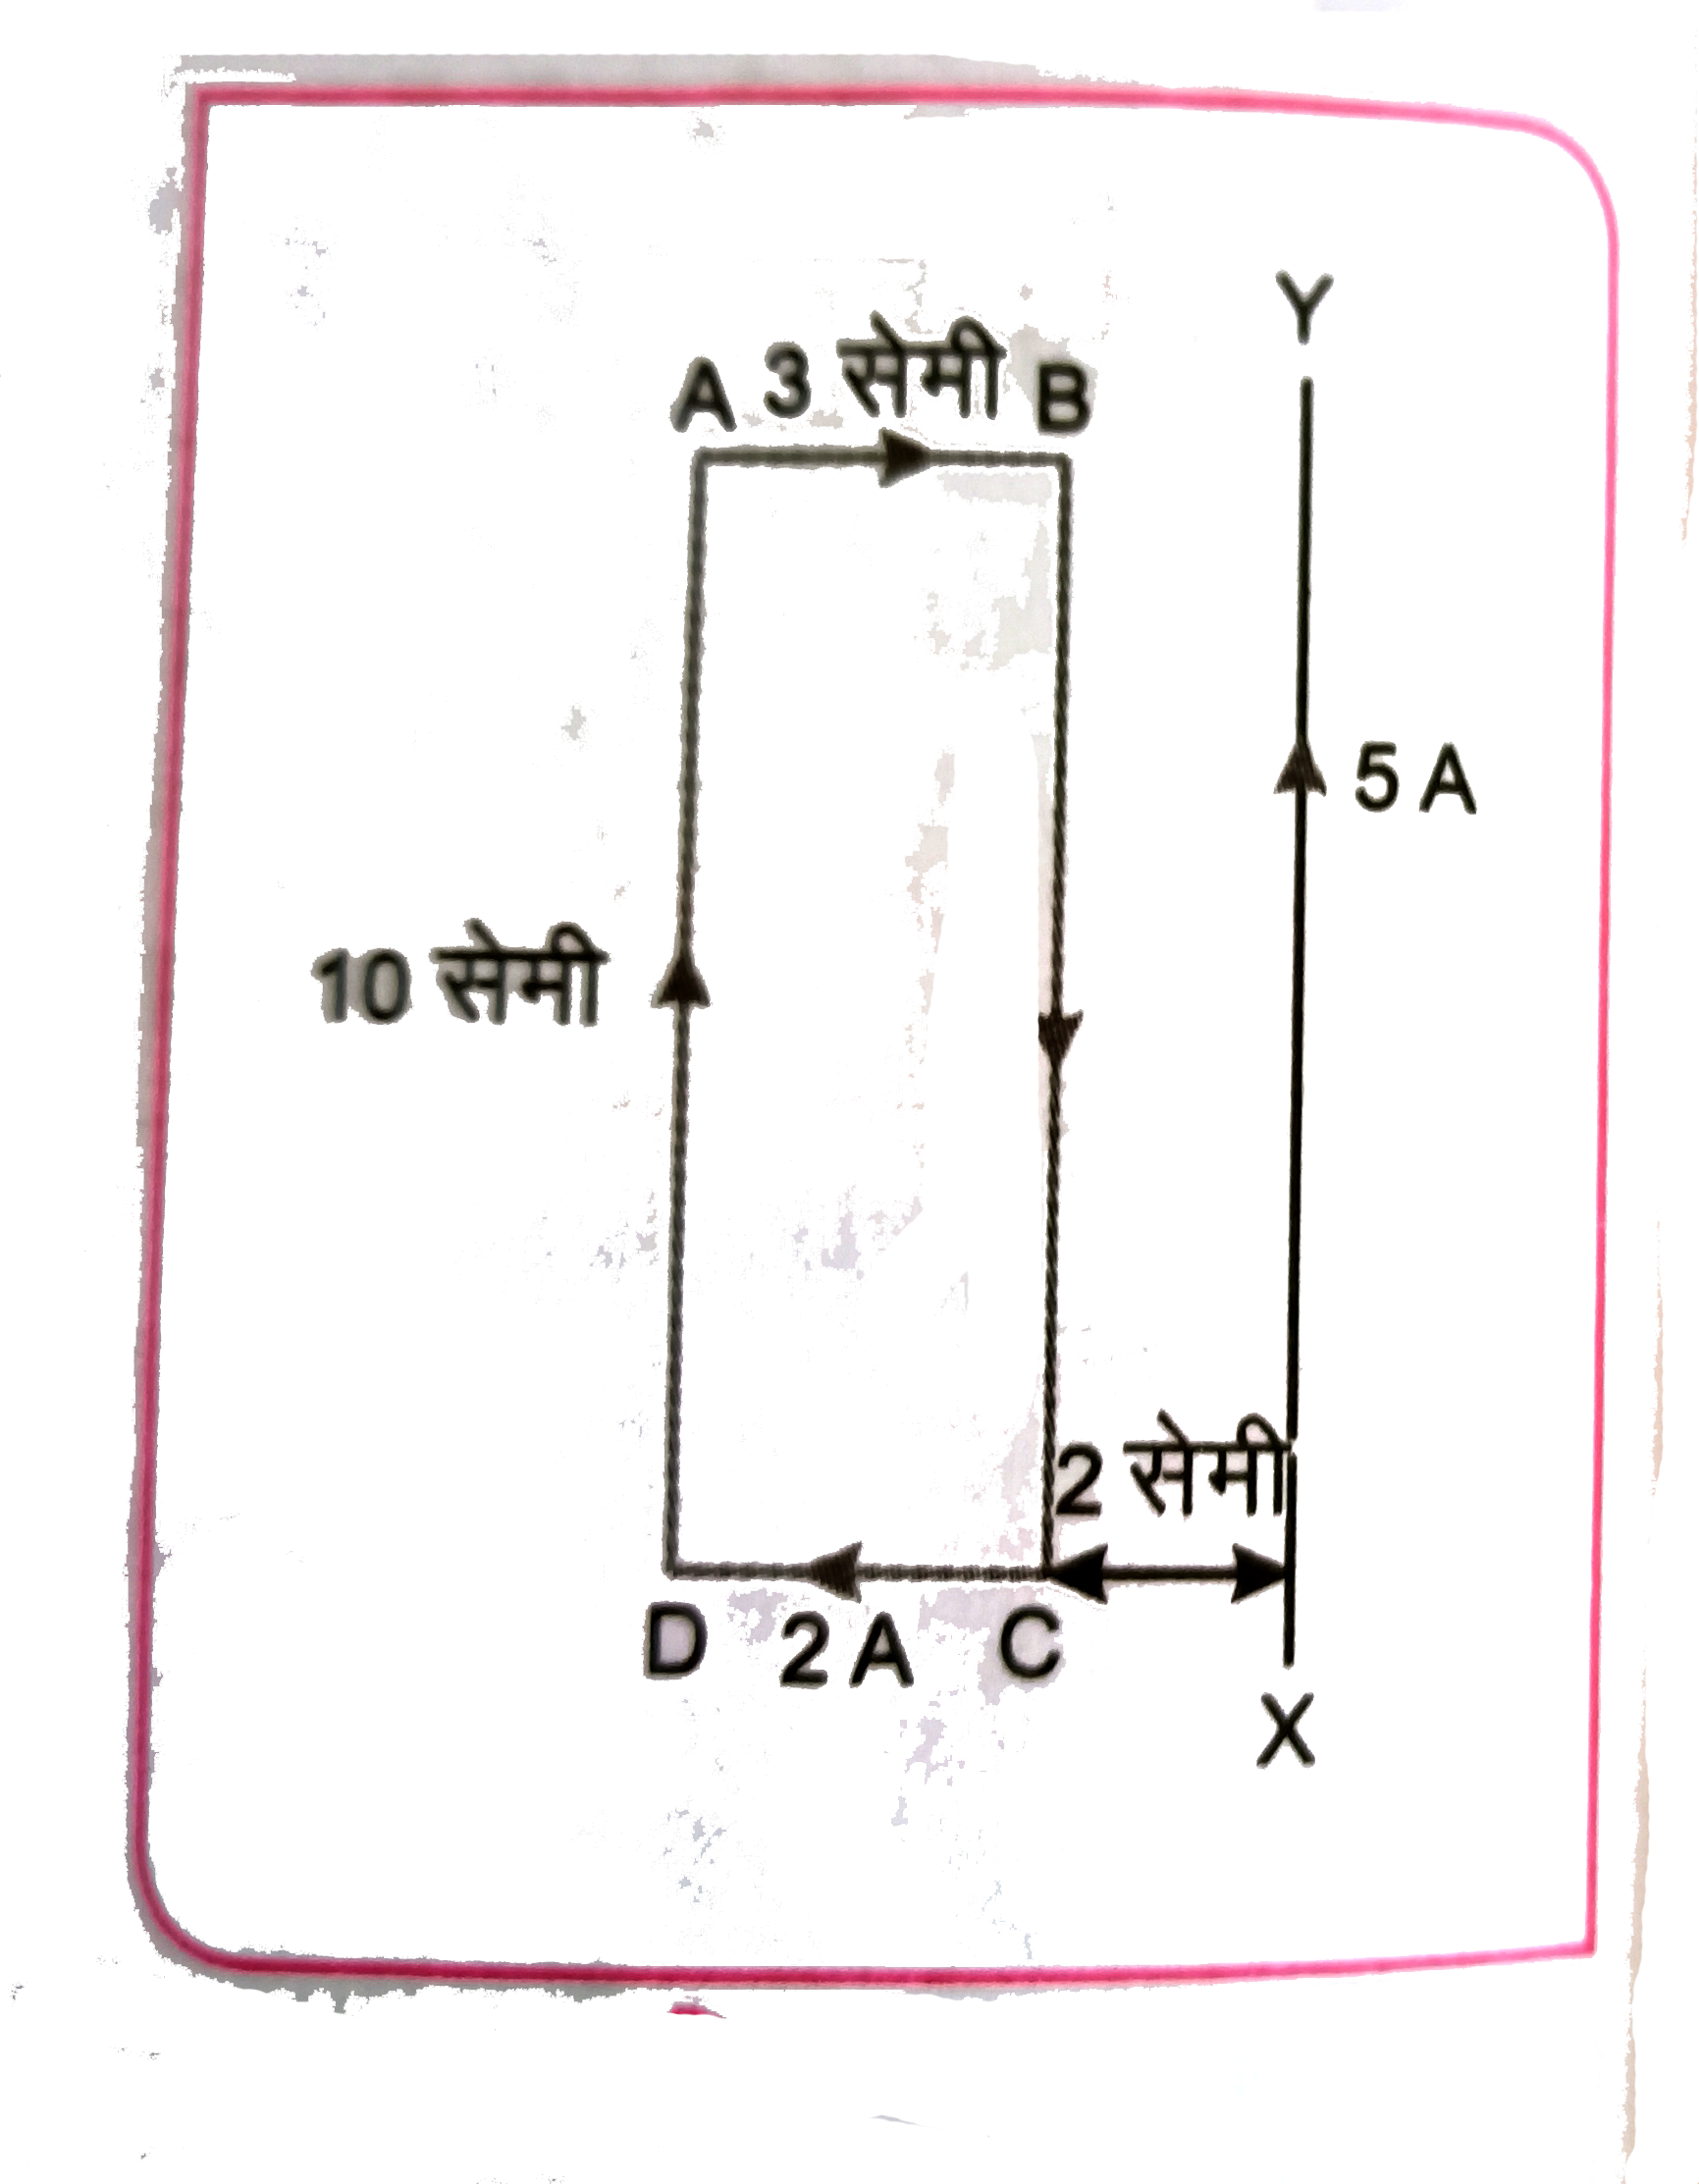 चित्र में एक सीधे , लम्बे चालक तार XY से 2 सेमी दूर एक आयताकार धारावाही लूप ABCD रखा है । लूप पर लगने वाले परिणामी बल का परिमाण तथा दिशा ज्ञात कीजिए ।